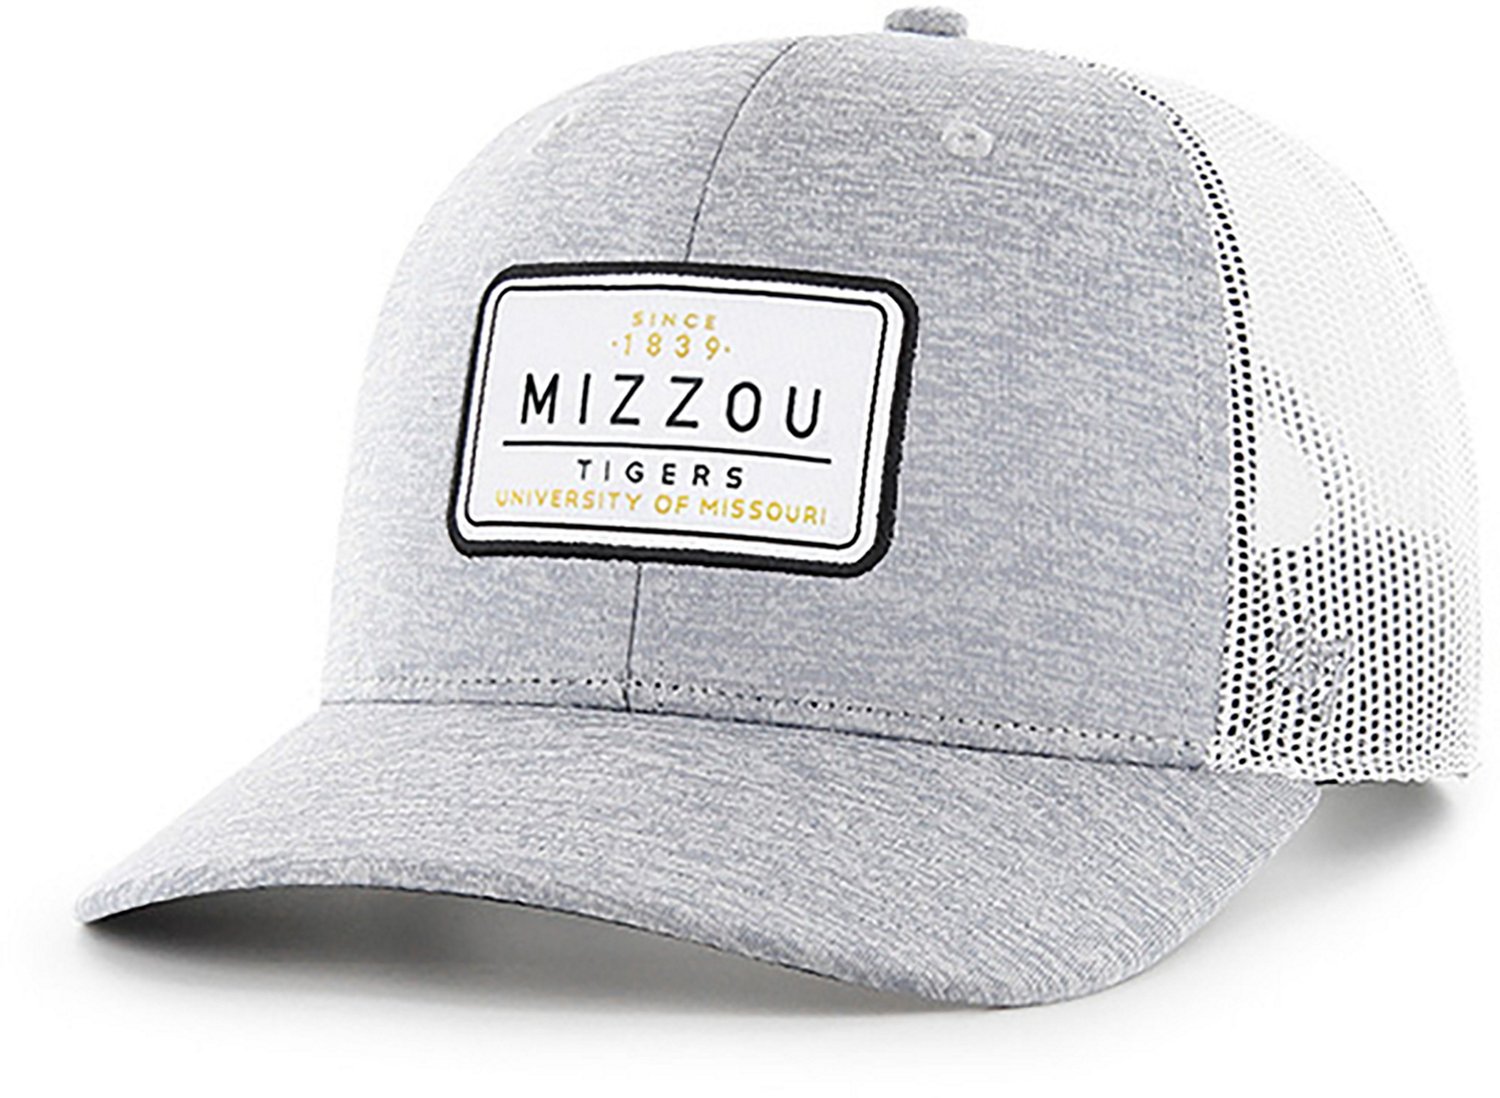 University of Missouri Tigers Mizzou White Silicone Bracelet